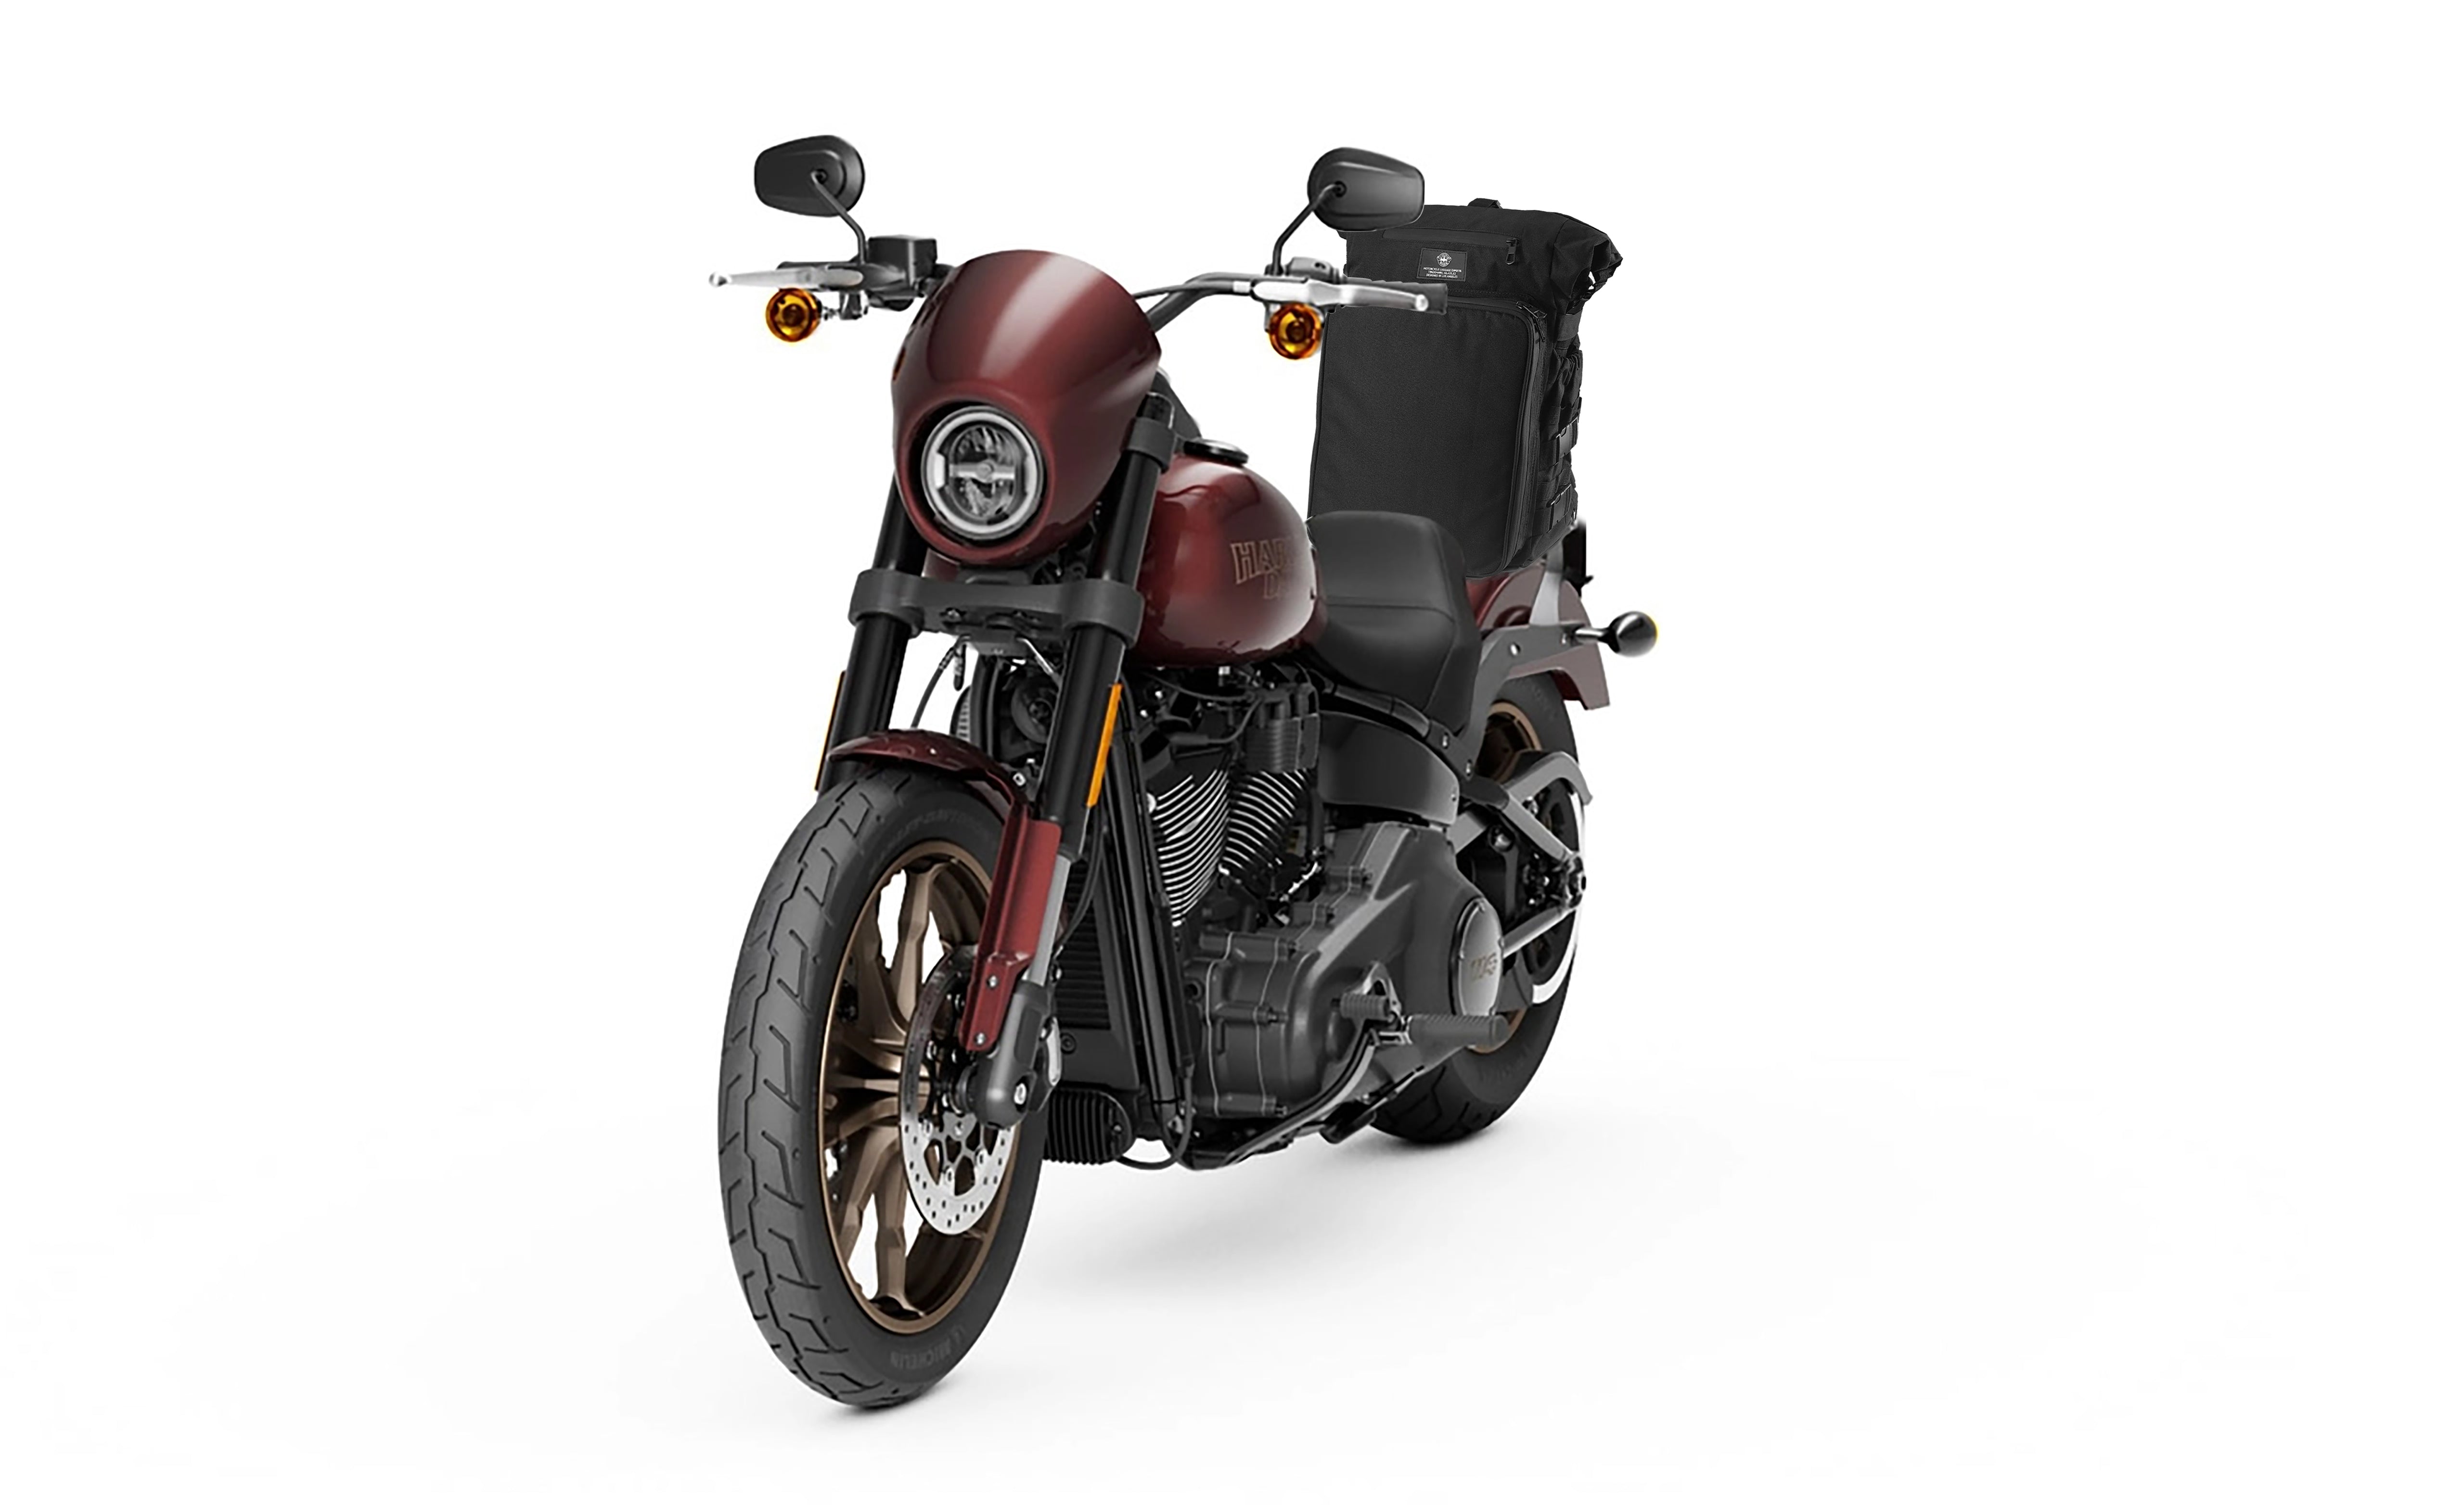 Viking Renegade XL Indian Motorcycle Tail Bag Bag on Bike View @expand